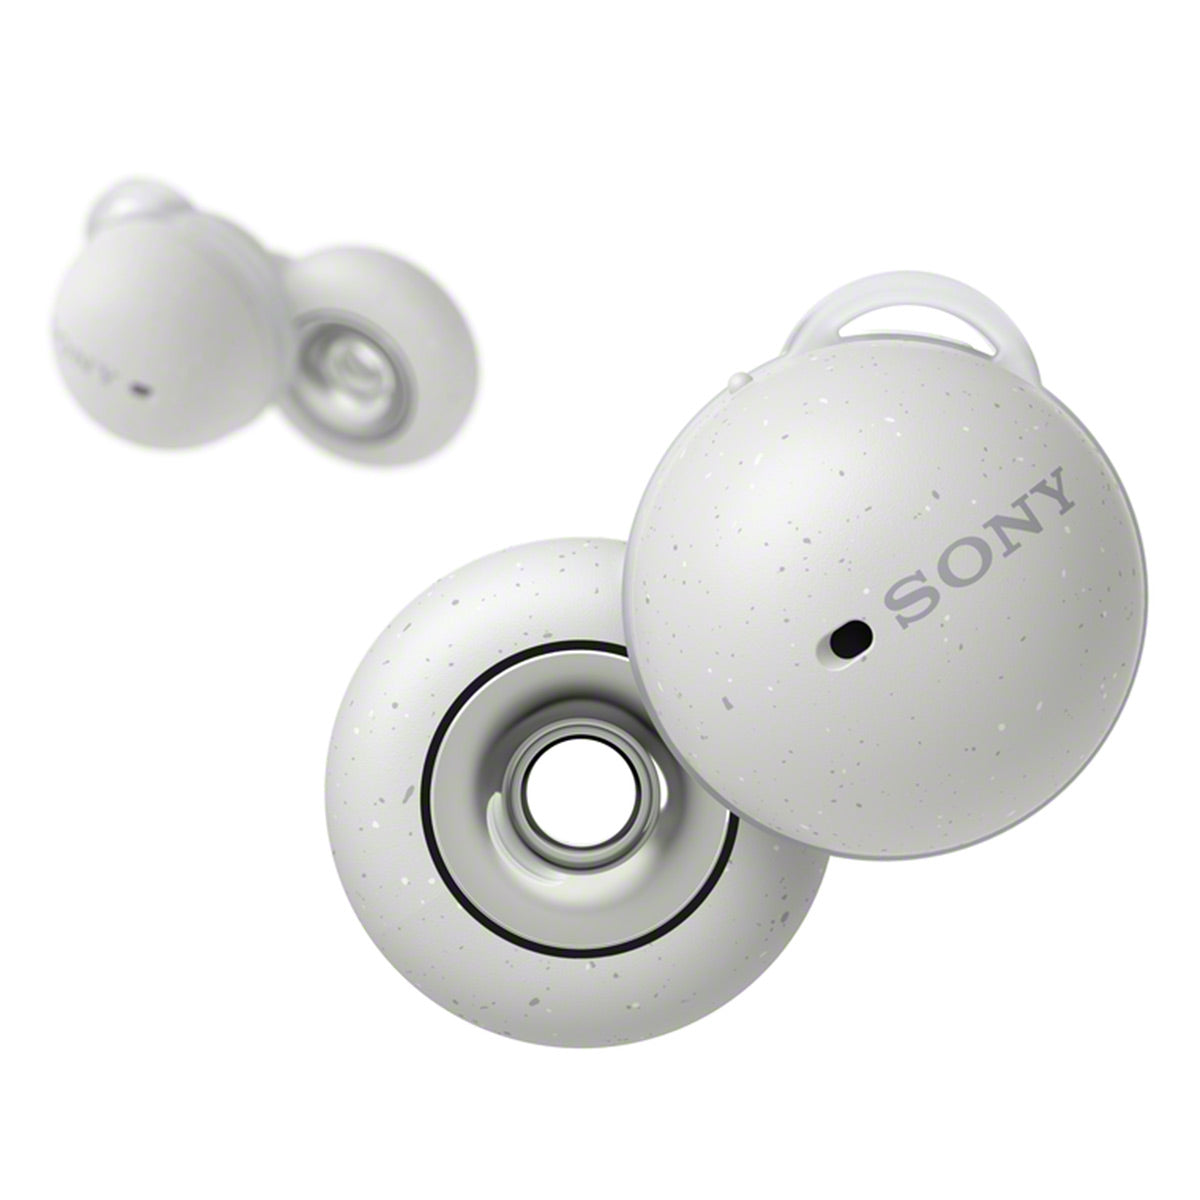 Sony LinkBuds Truly Wireless Earbuds (White)